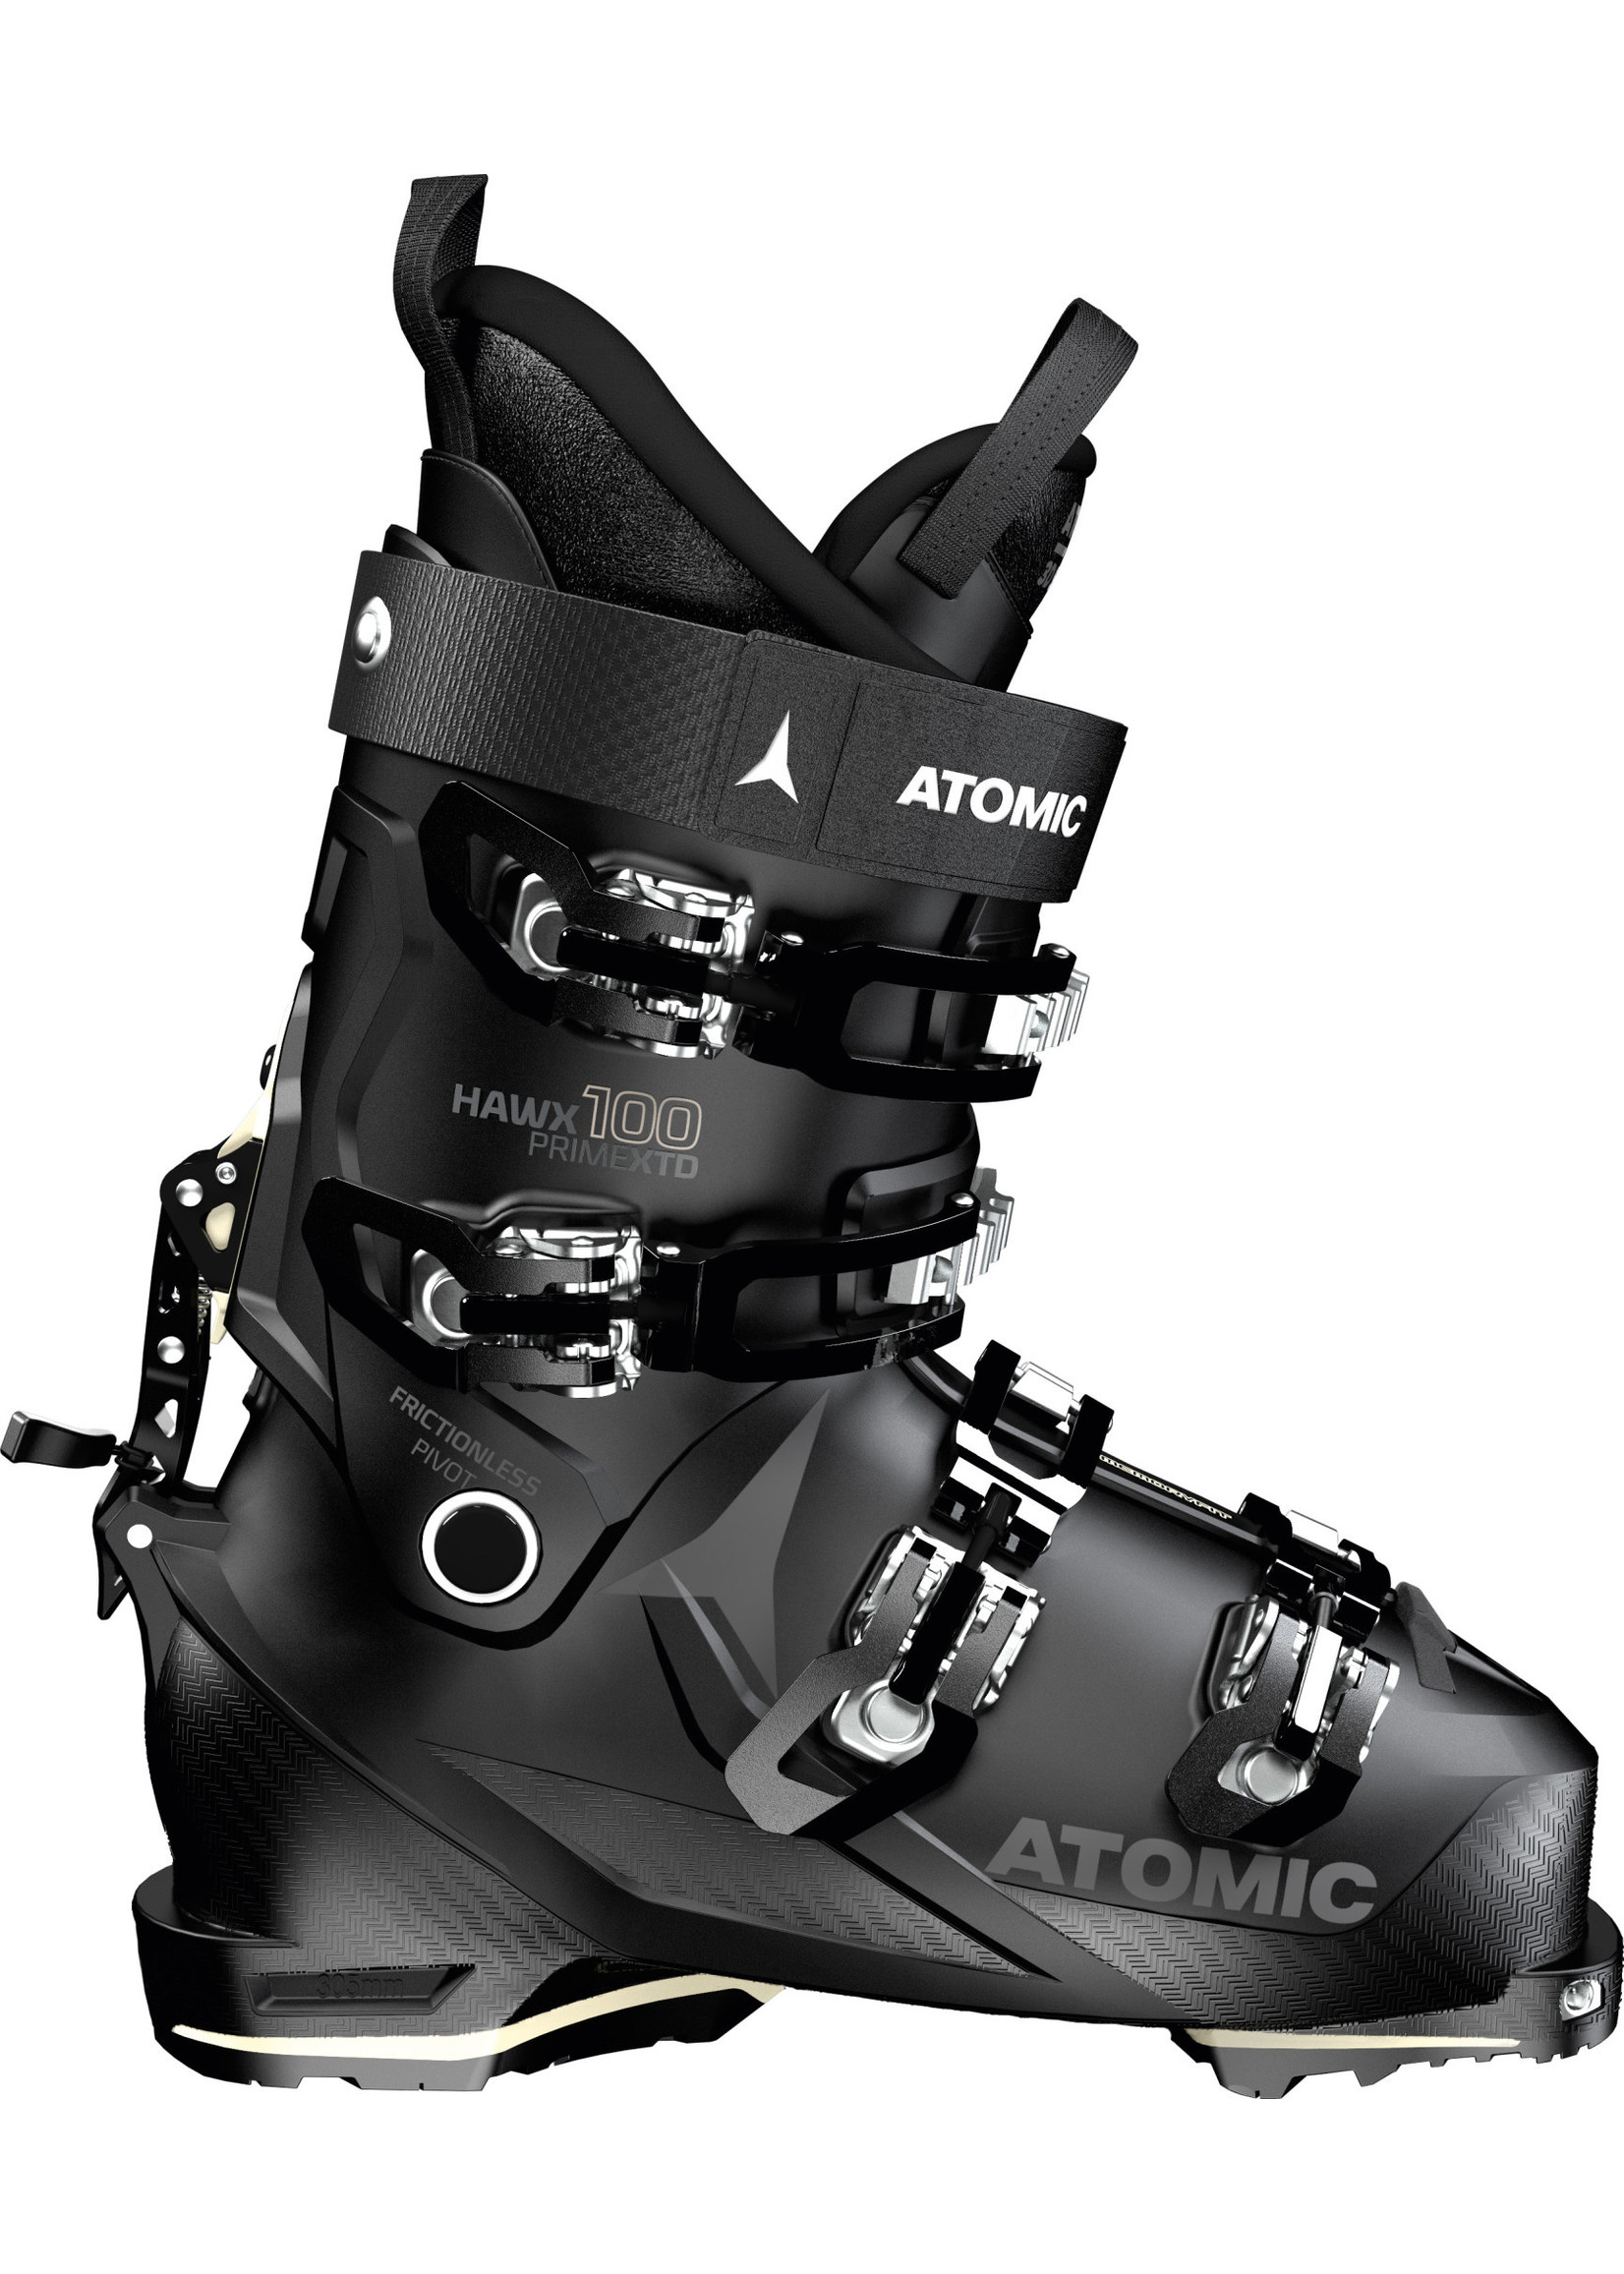 Atomic Touring Ski Boot Hawx Prime XTD 100